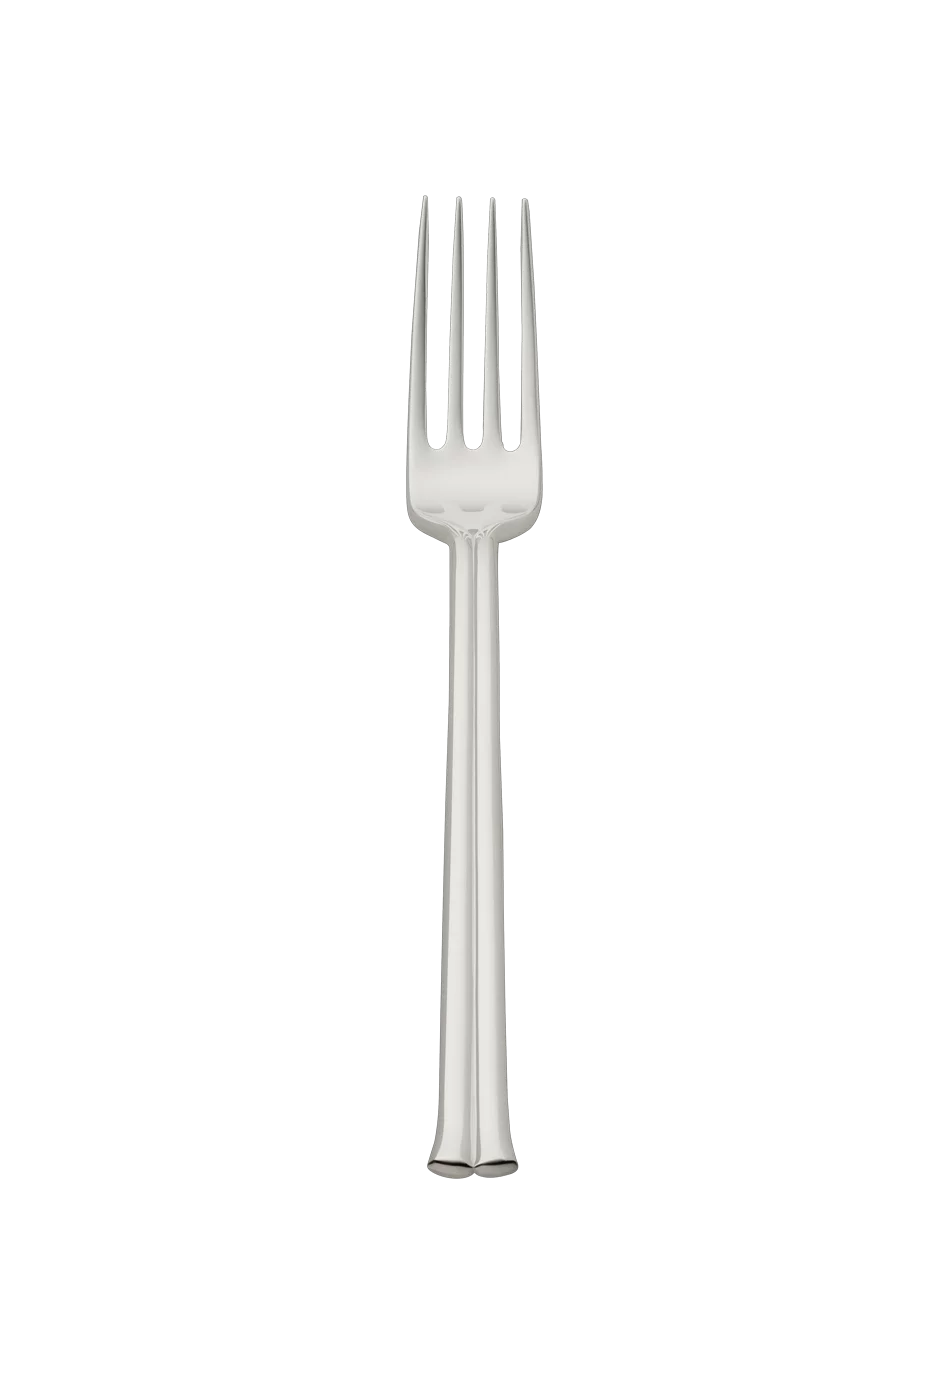 Viva Dessert Fork (925 Sterling Silver)